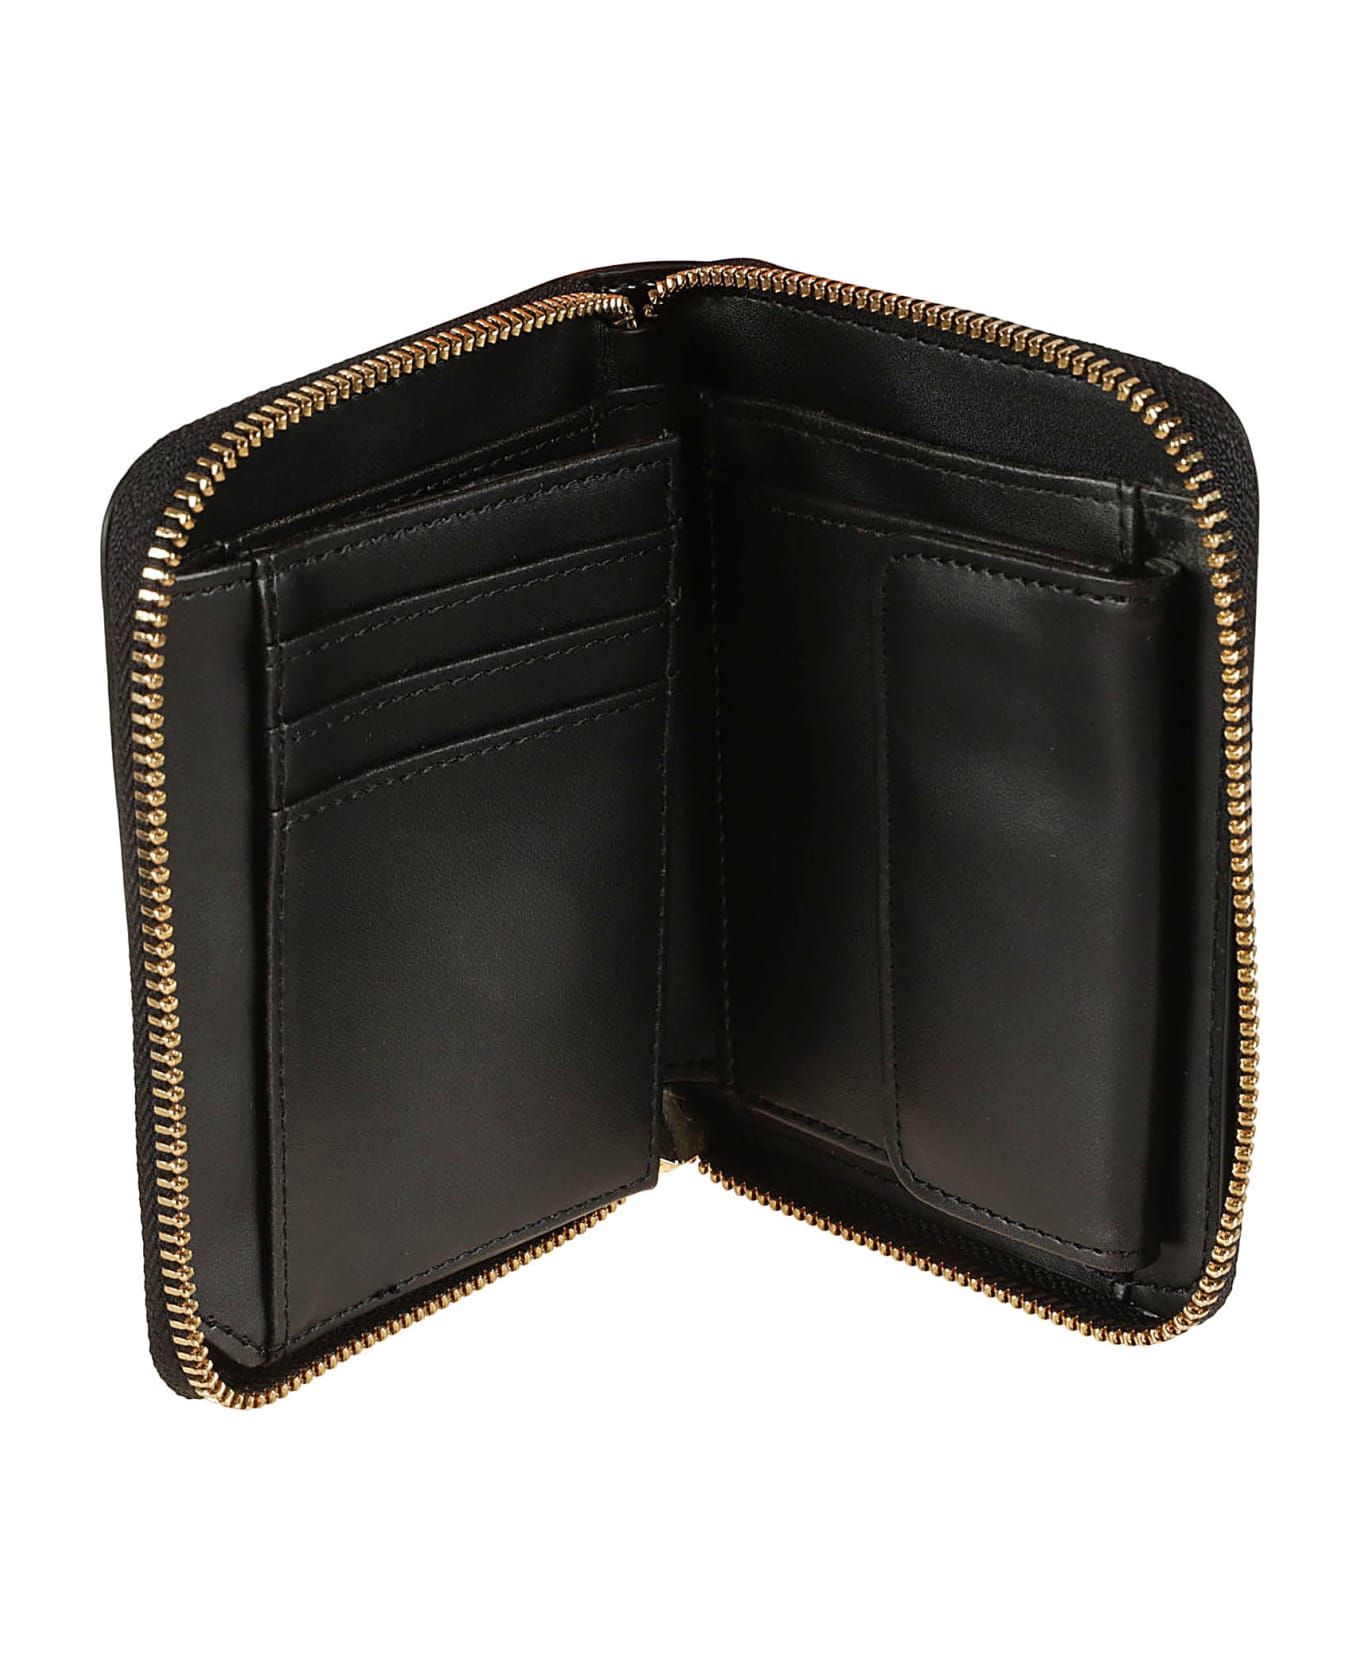 Love Moschino Logo Skinned Zip-around Wallet - Black